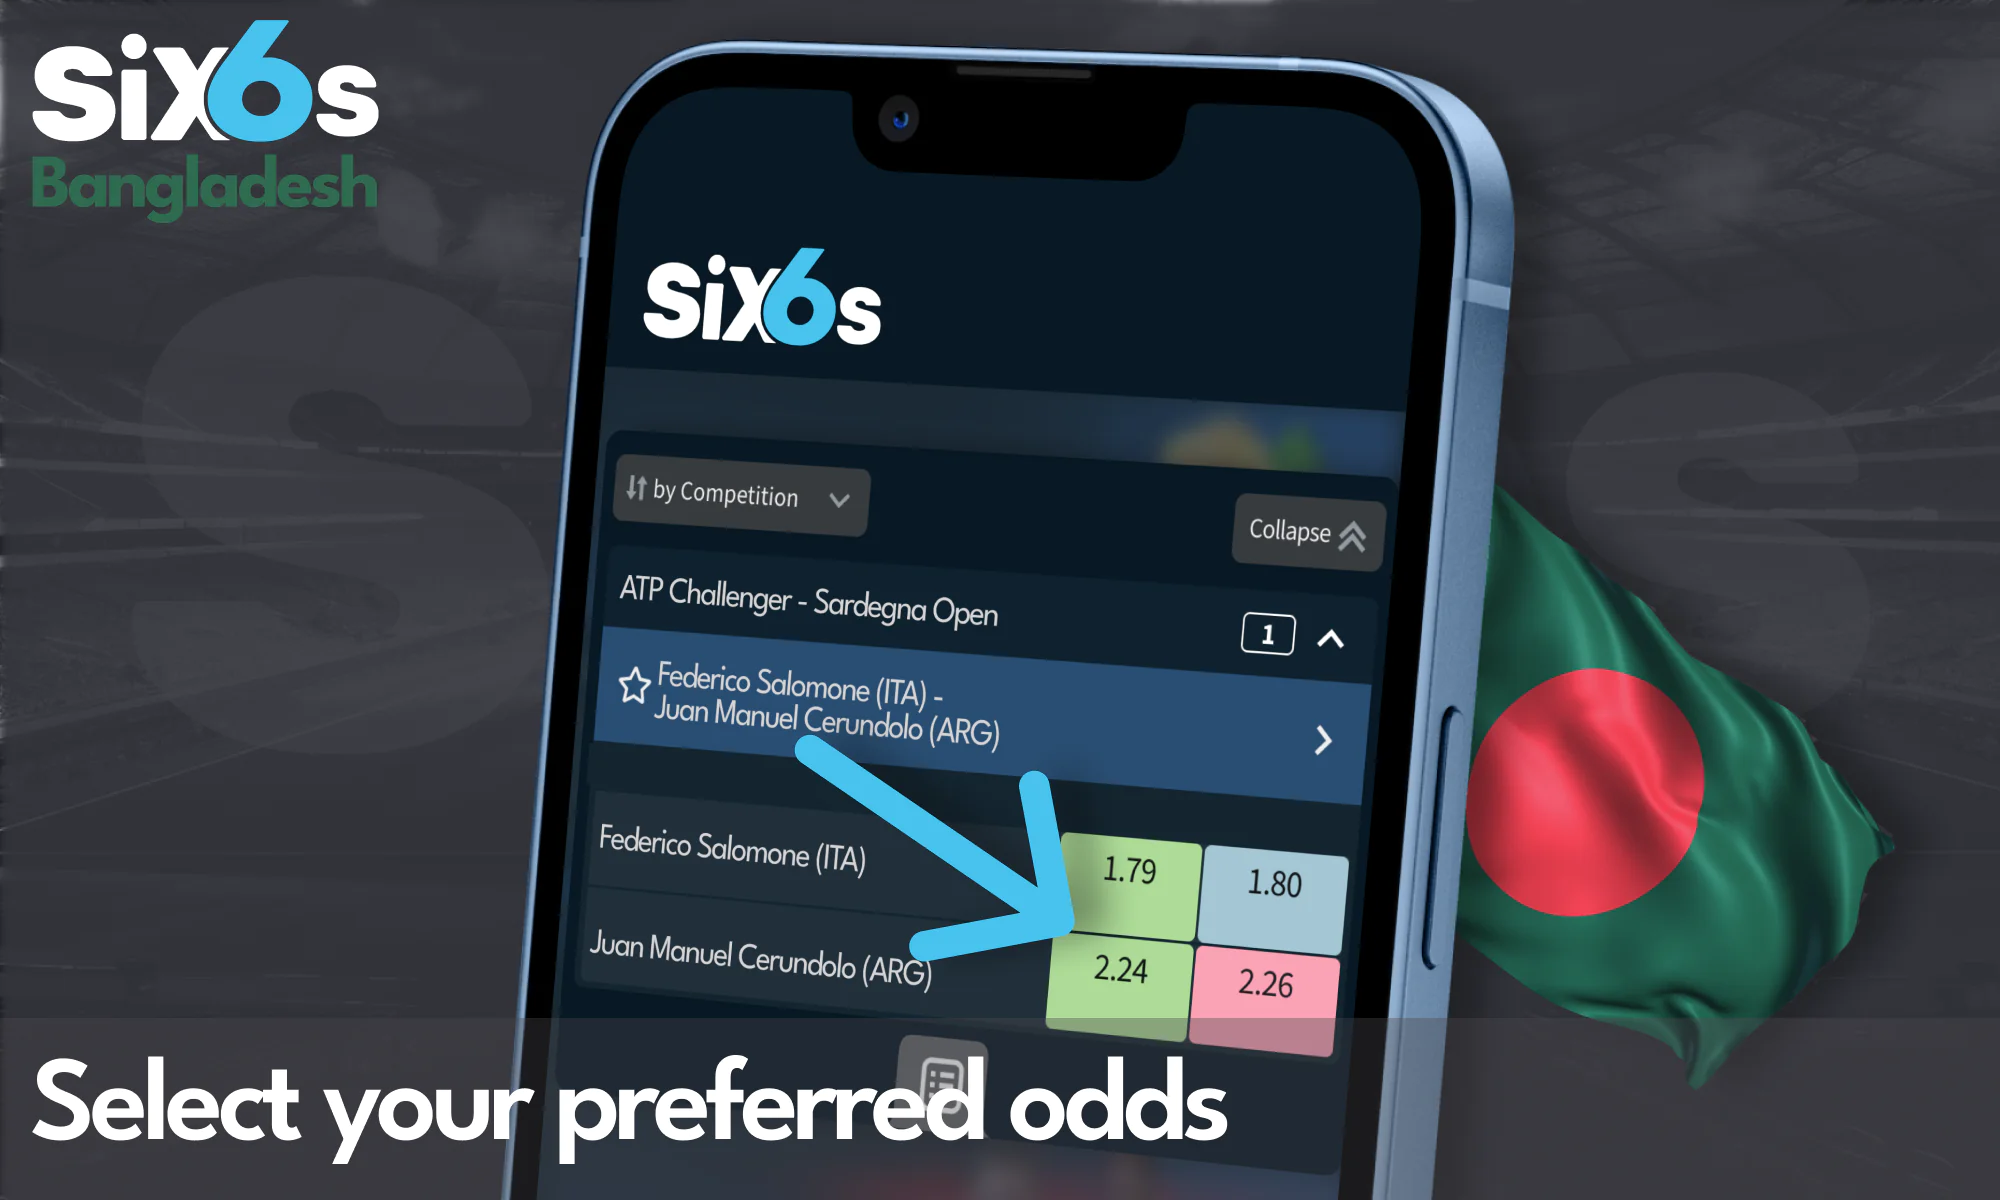 Six6s Bangladesh - select odds